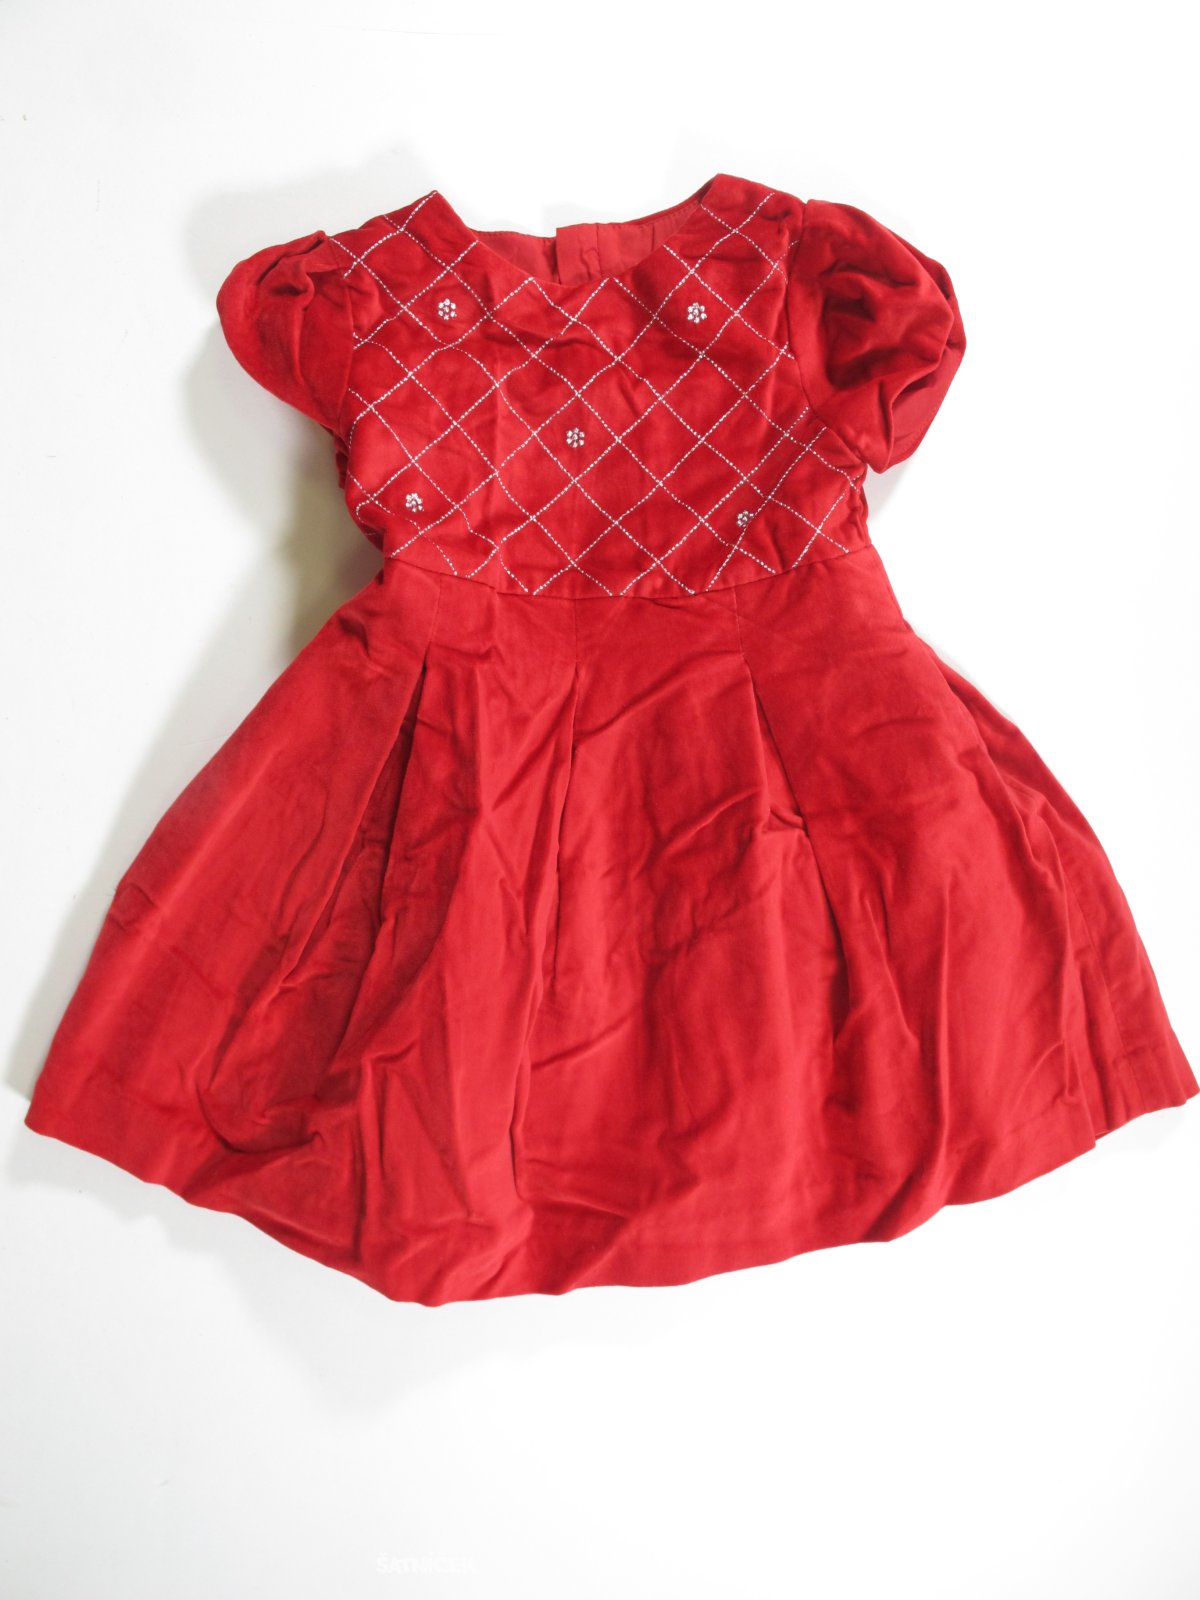 Šaty pro holky červené sametové   secondhand